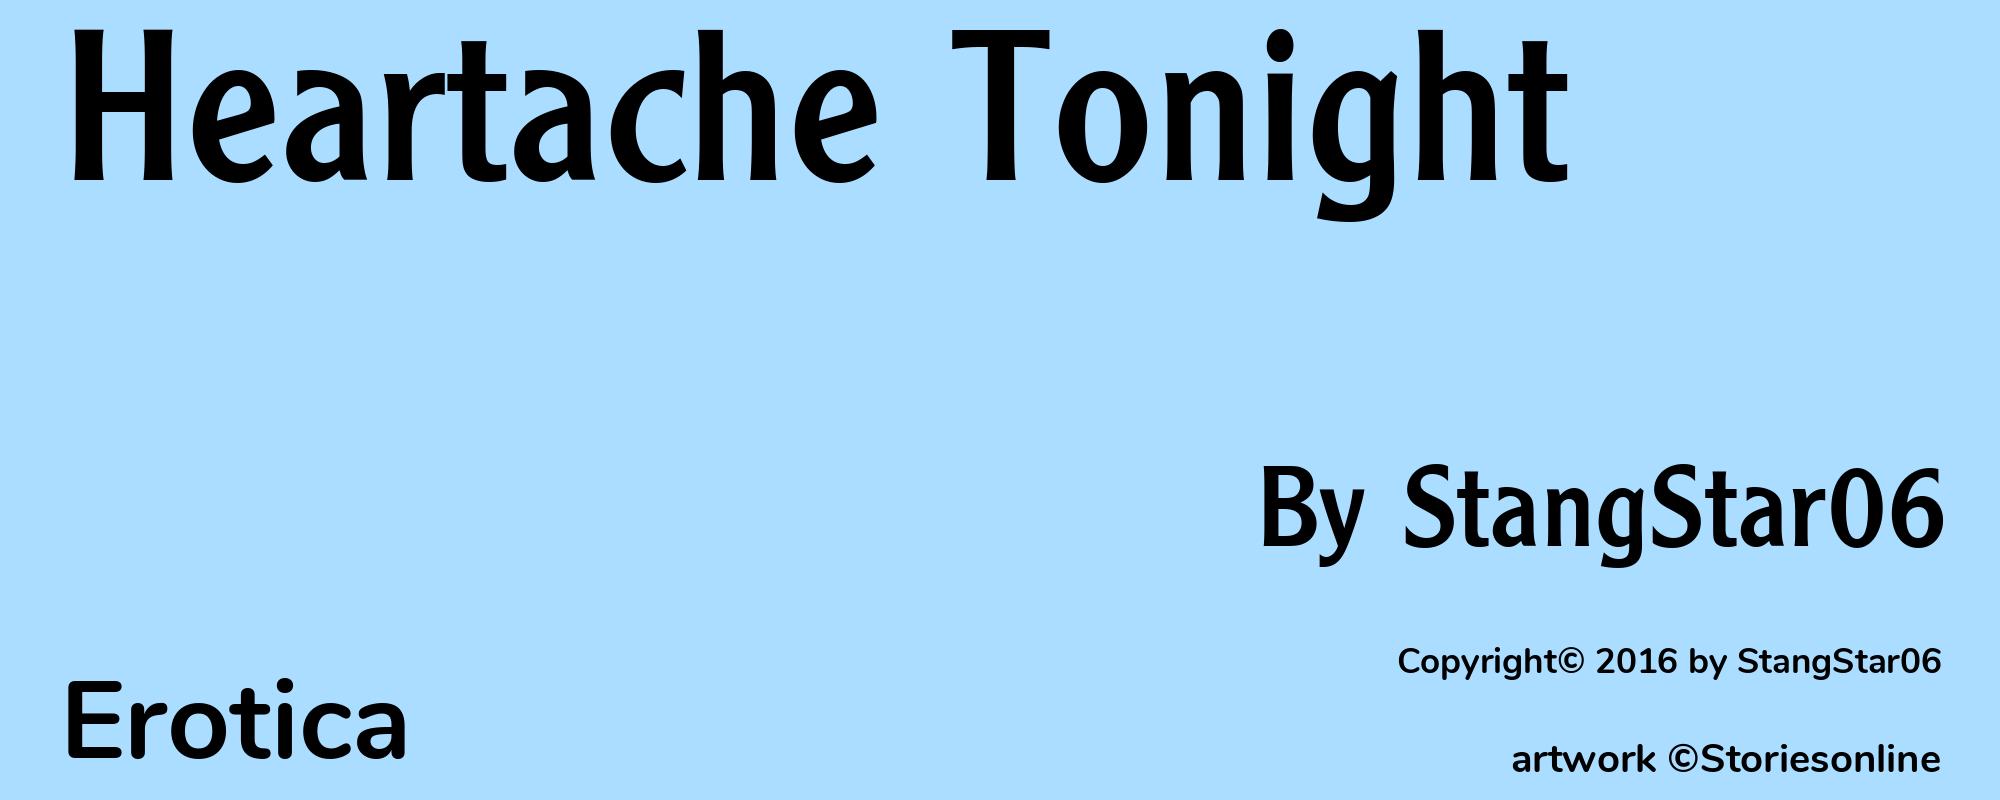 Heartache Tonight - Cover